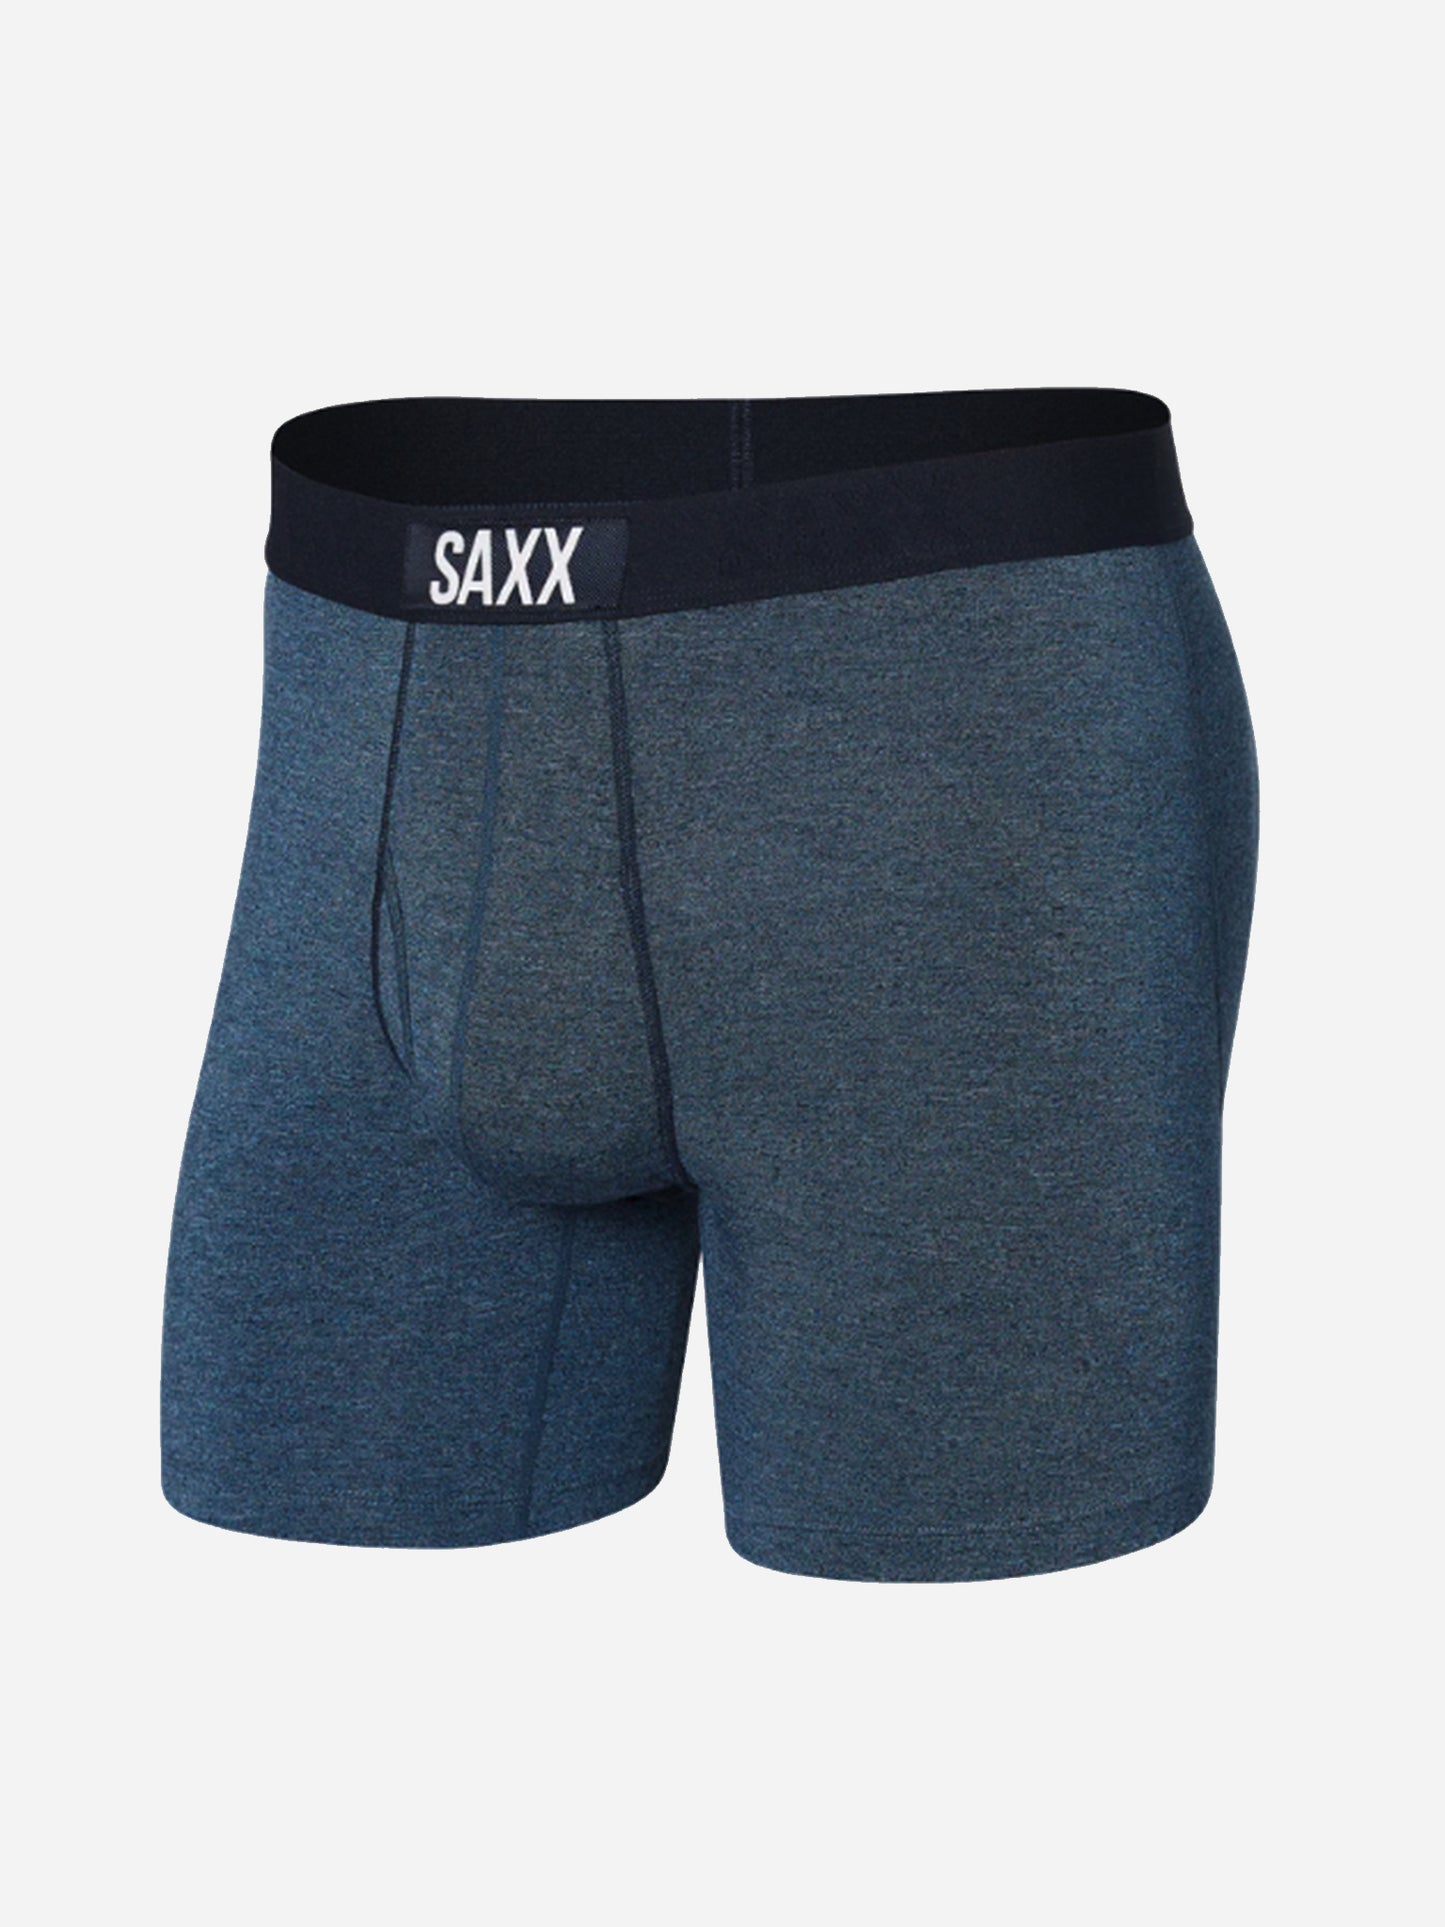 SAXX Underwear Men's Ultra Boxer Brief